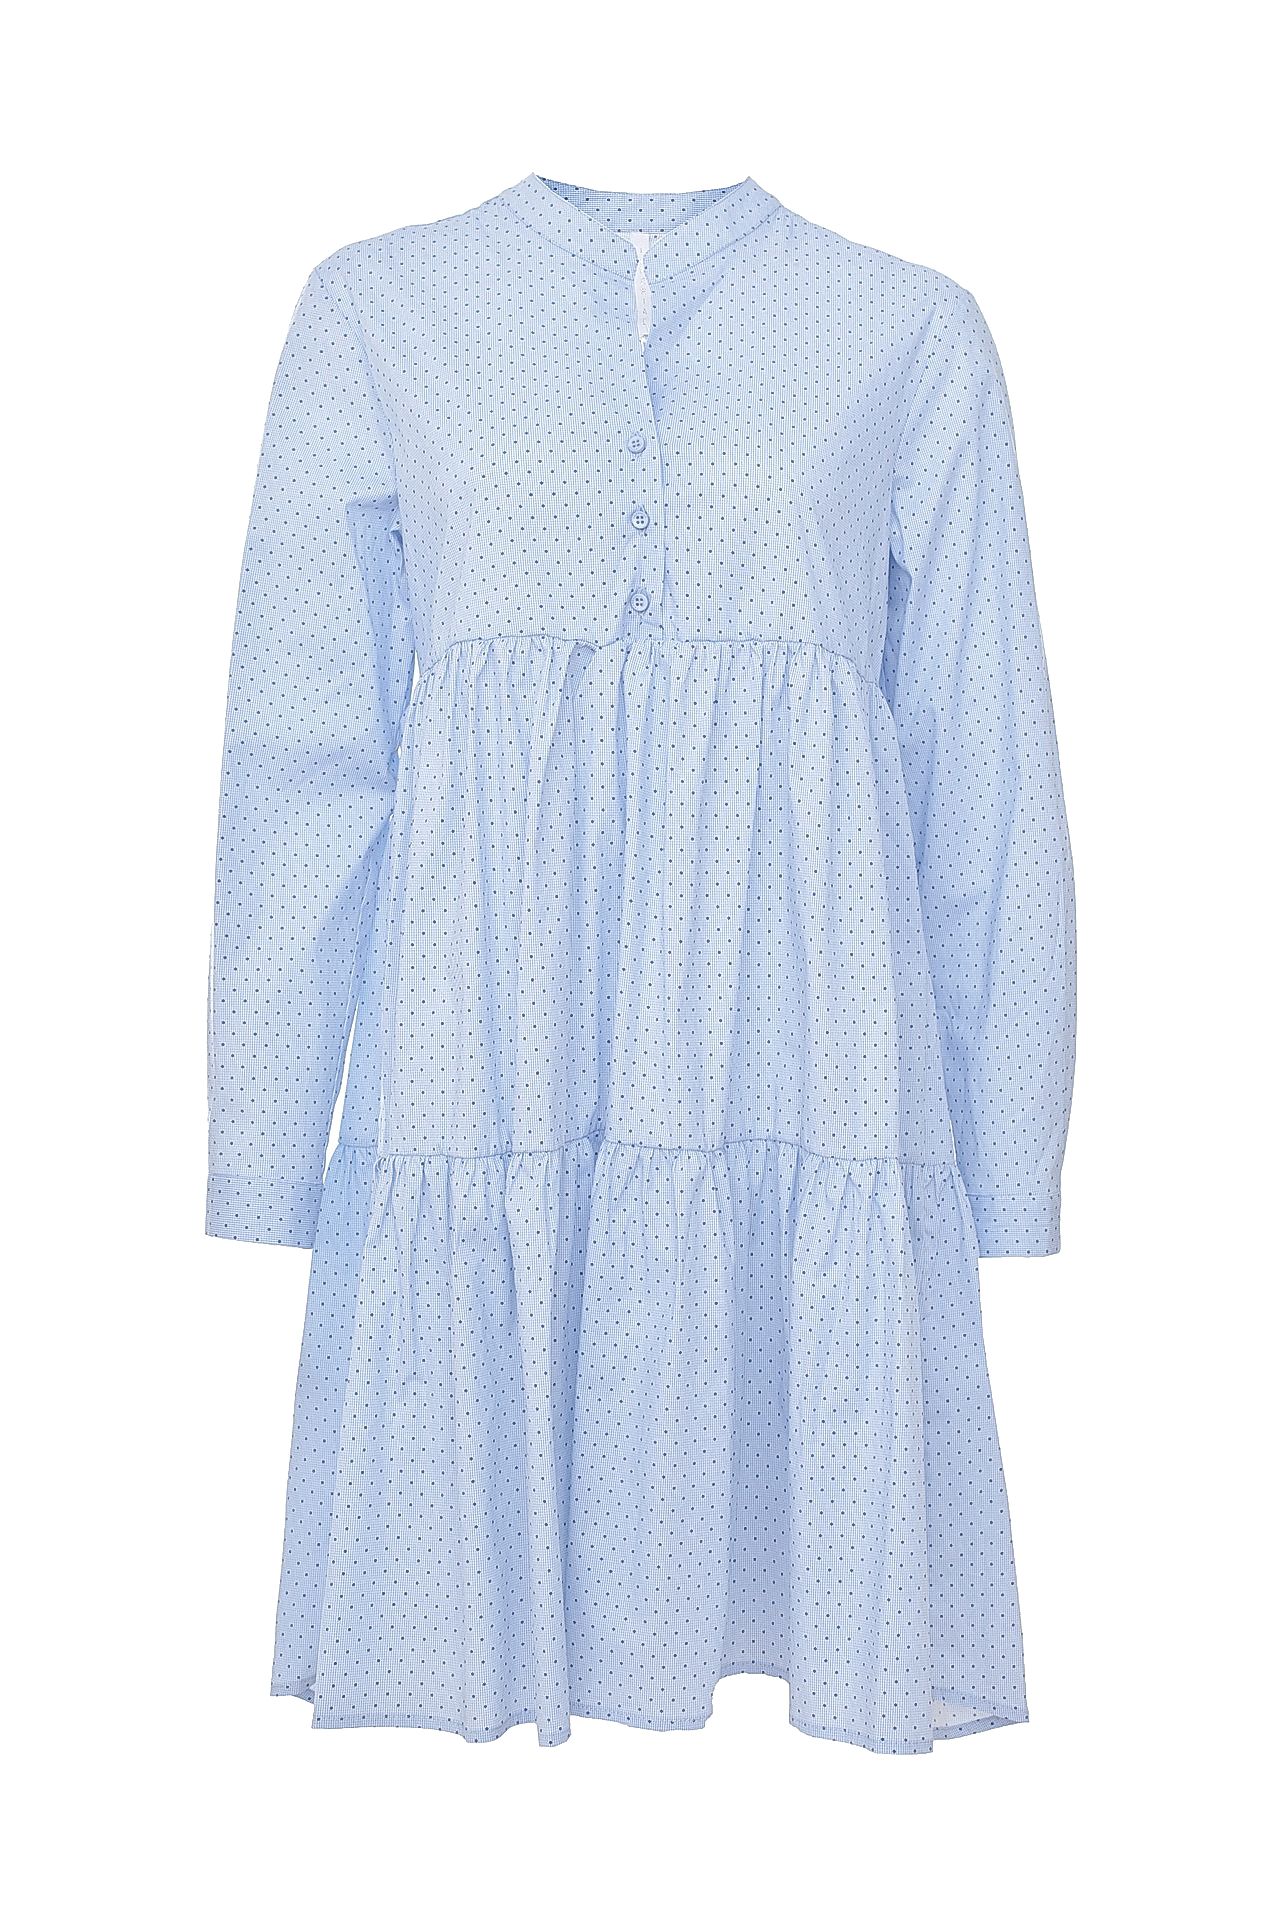 Одежда женская Платье IMPERIAL (AUL8T2S/17.2). Купить за 5950 руб.